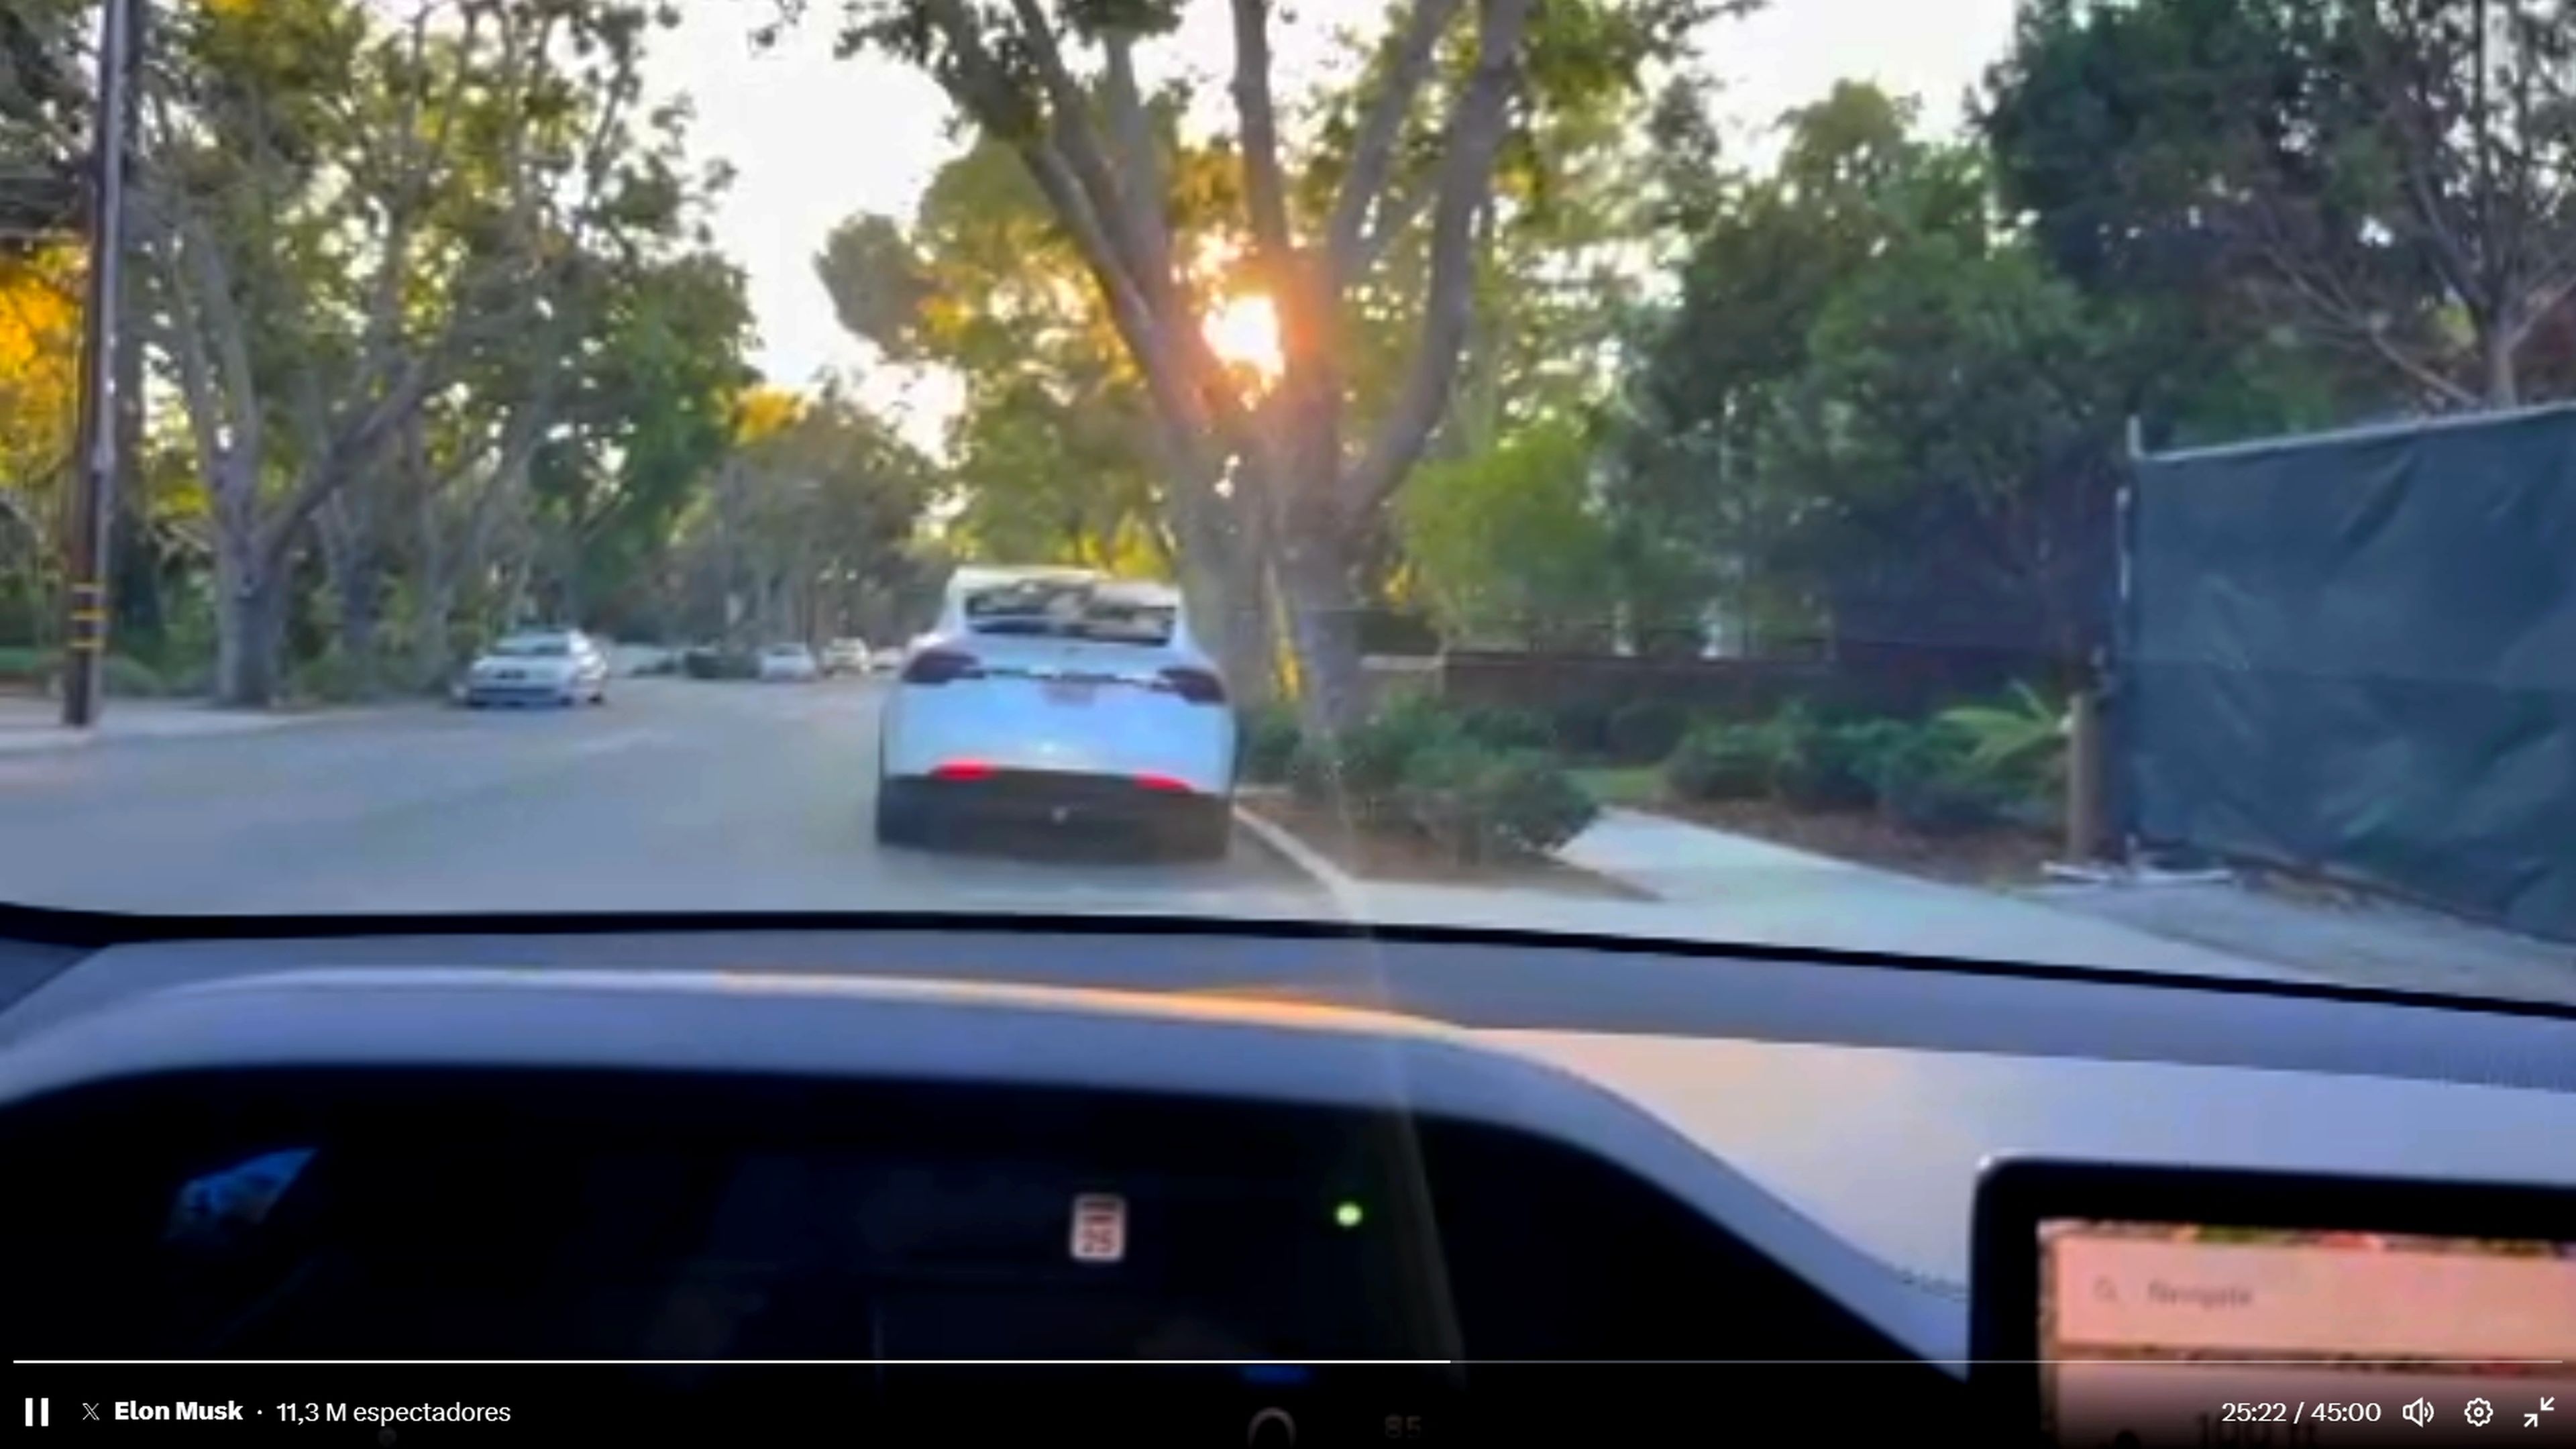 Elon Musk muestra en directo la conducción autónoma de Tesla, pero se salta un semáforo y desvela donde vive Mark Zuckerberg